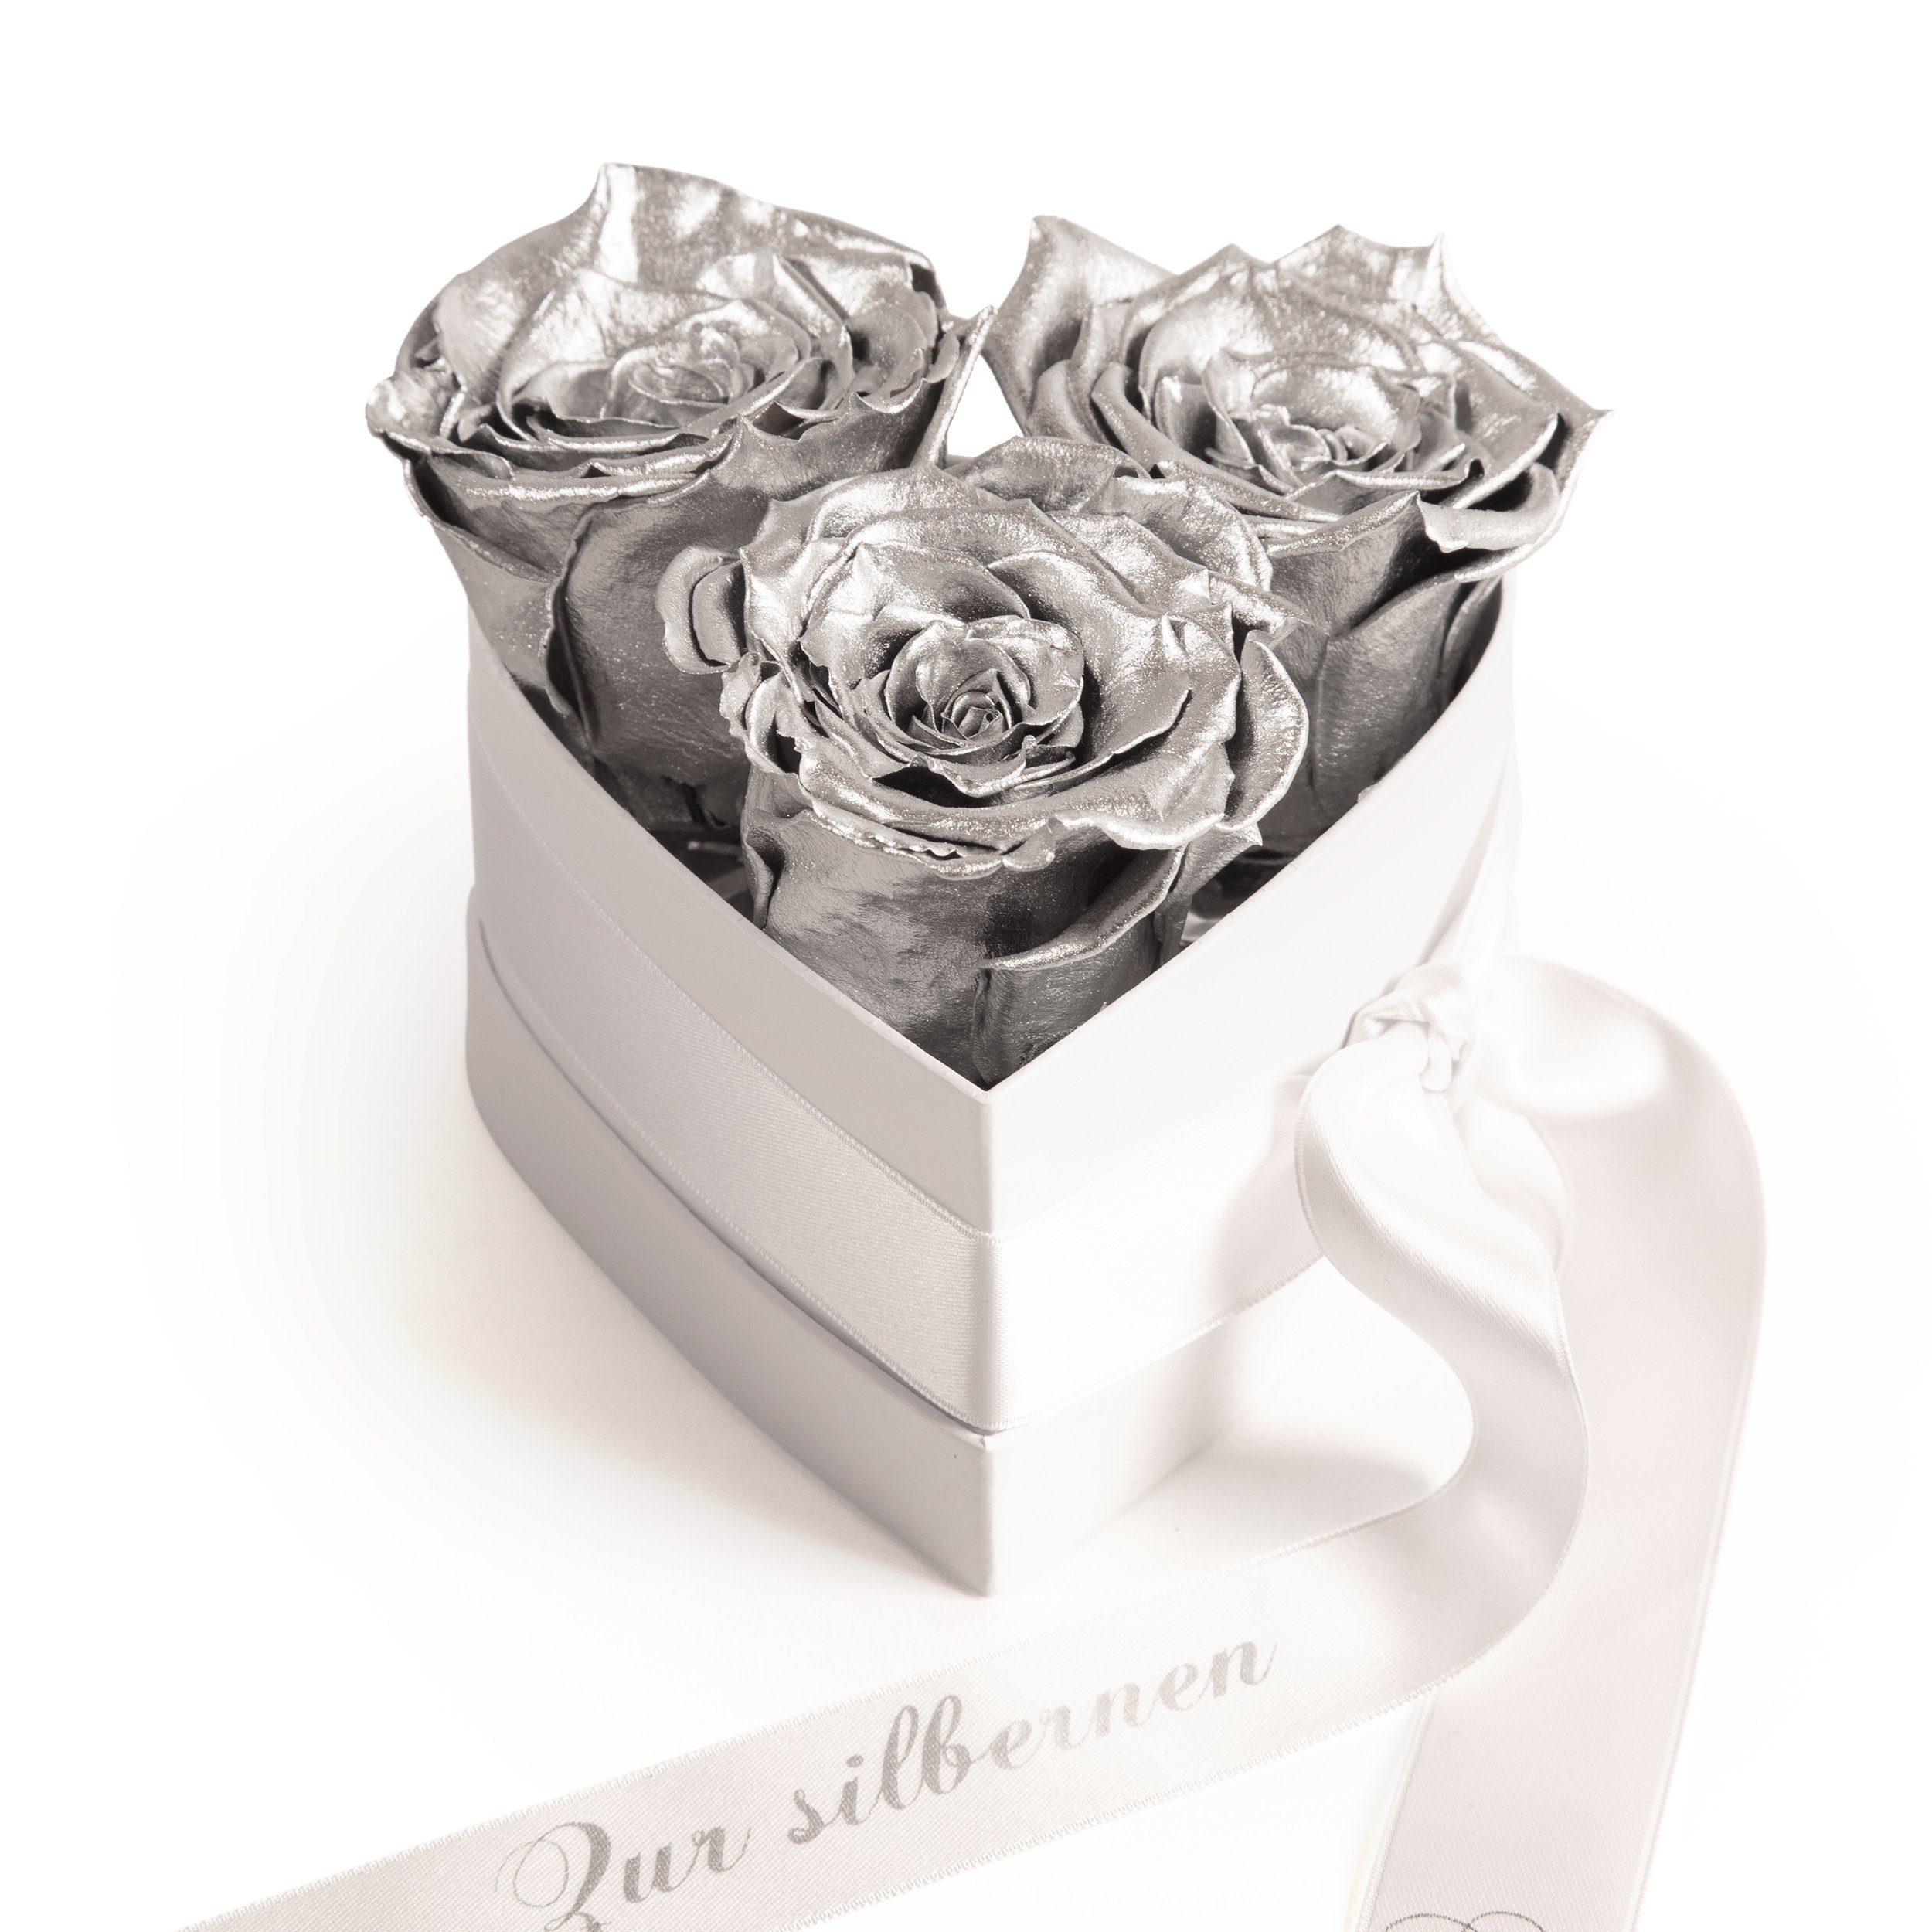 Kunstpflanze Infinity Rosenbox Silberhochzeit Geschenk Jubiläum 25 Jahre Rosen, ROSEMARIE SCHULZ Heidelberg, Höhe 10 cm, haltbare Blumen